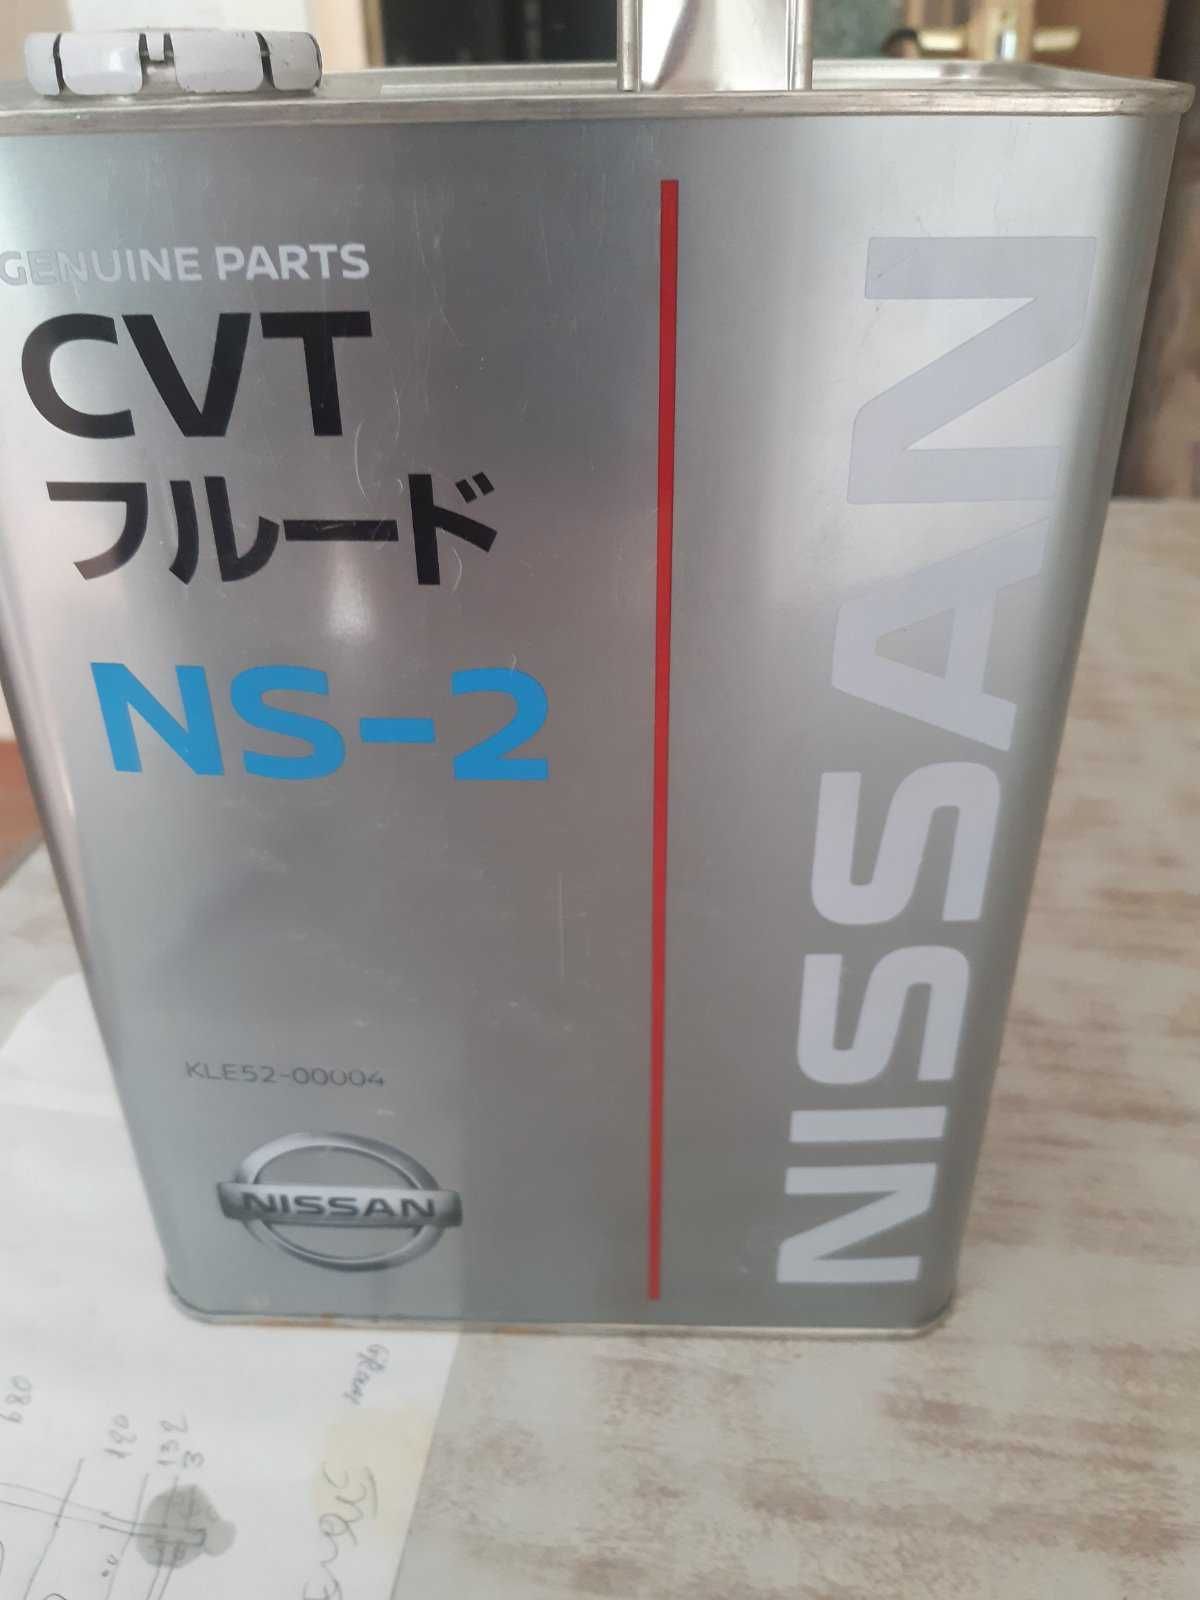 Масло трансмиссионное Nissan CVT NS-2 4 л (KLE5200004) - остаток 2 л.